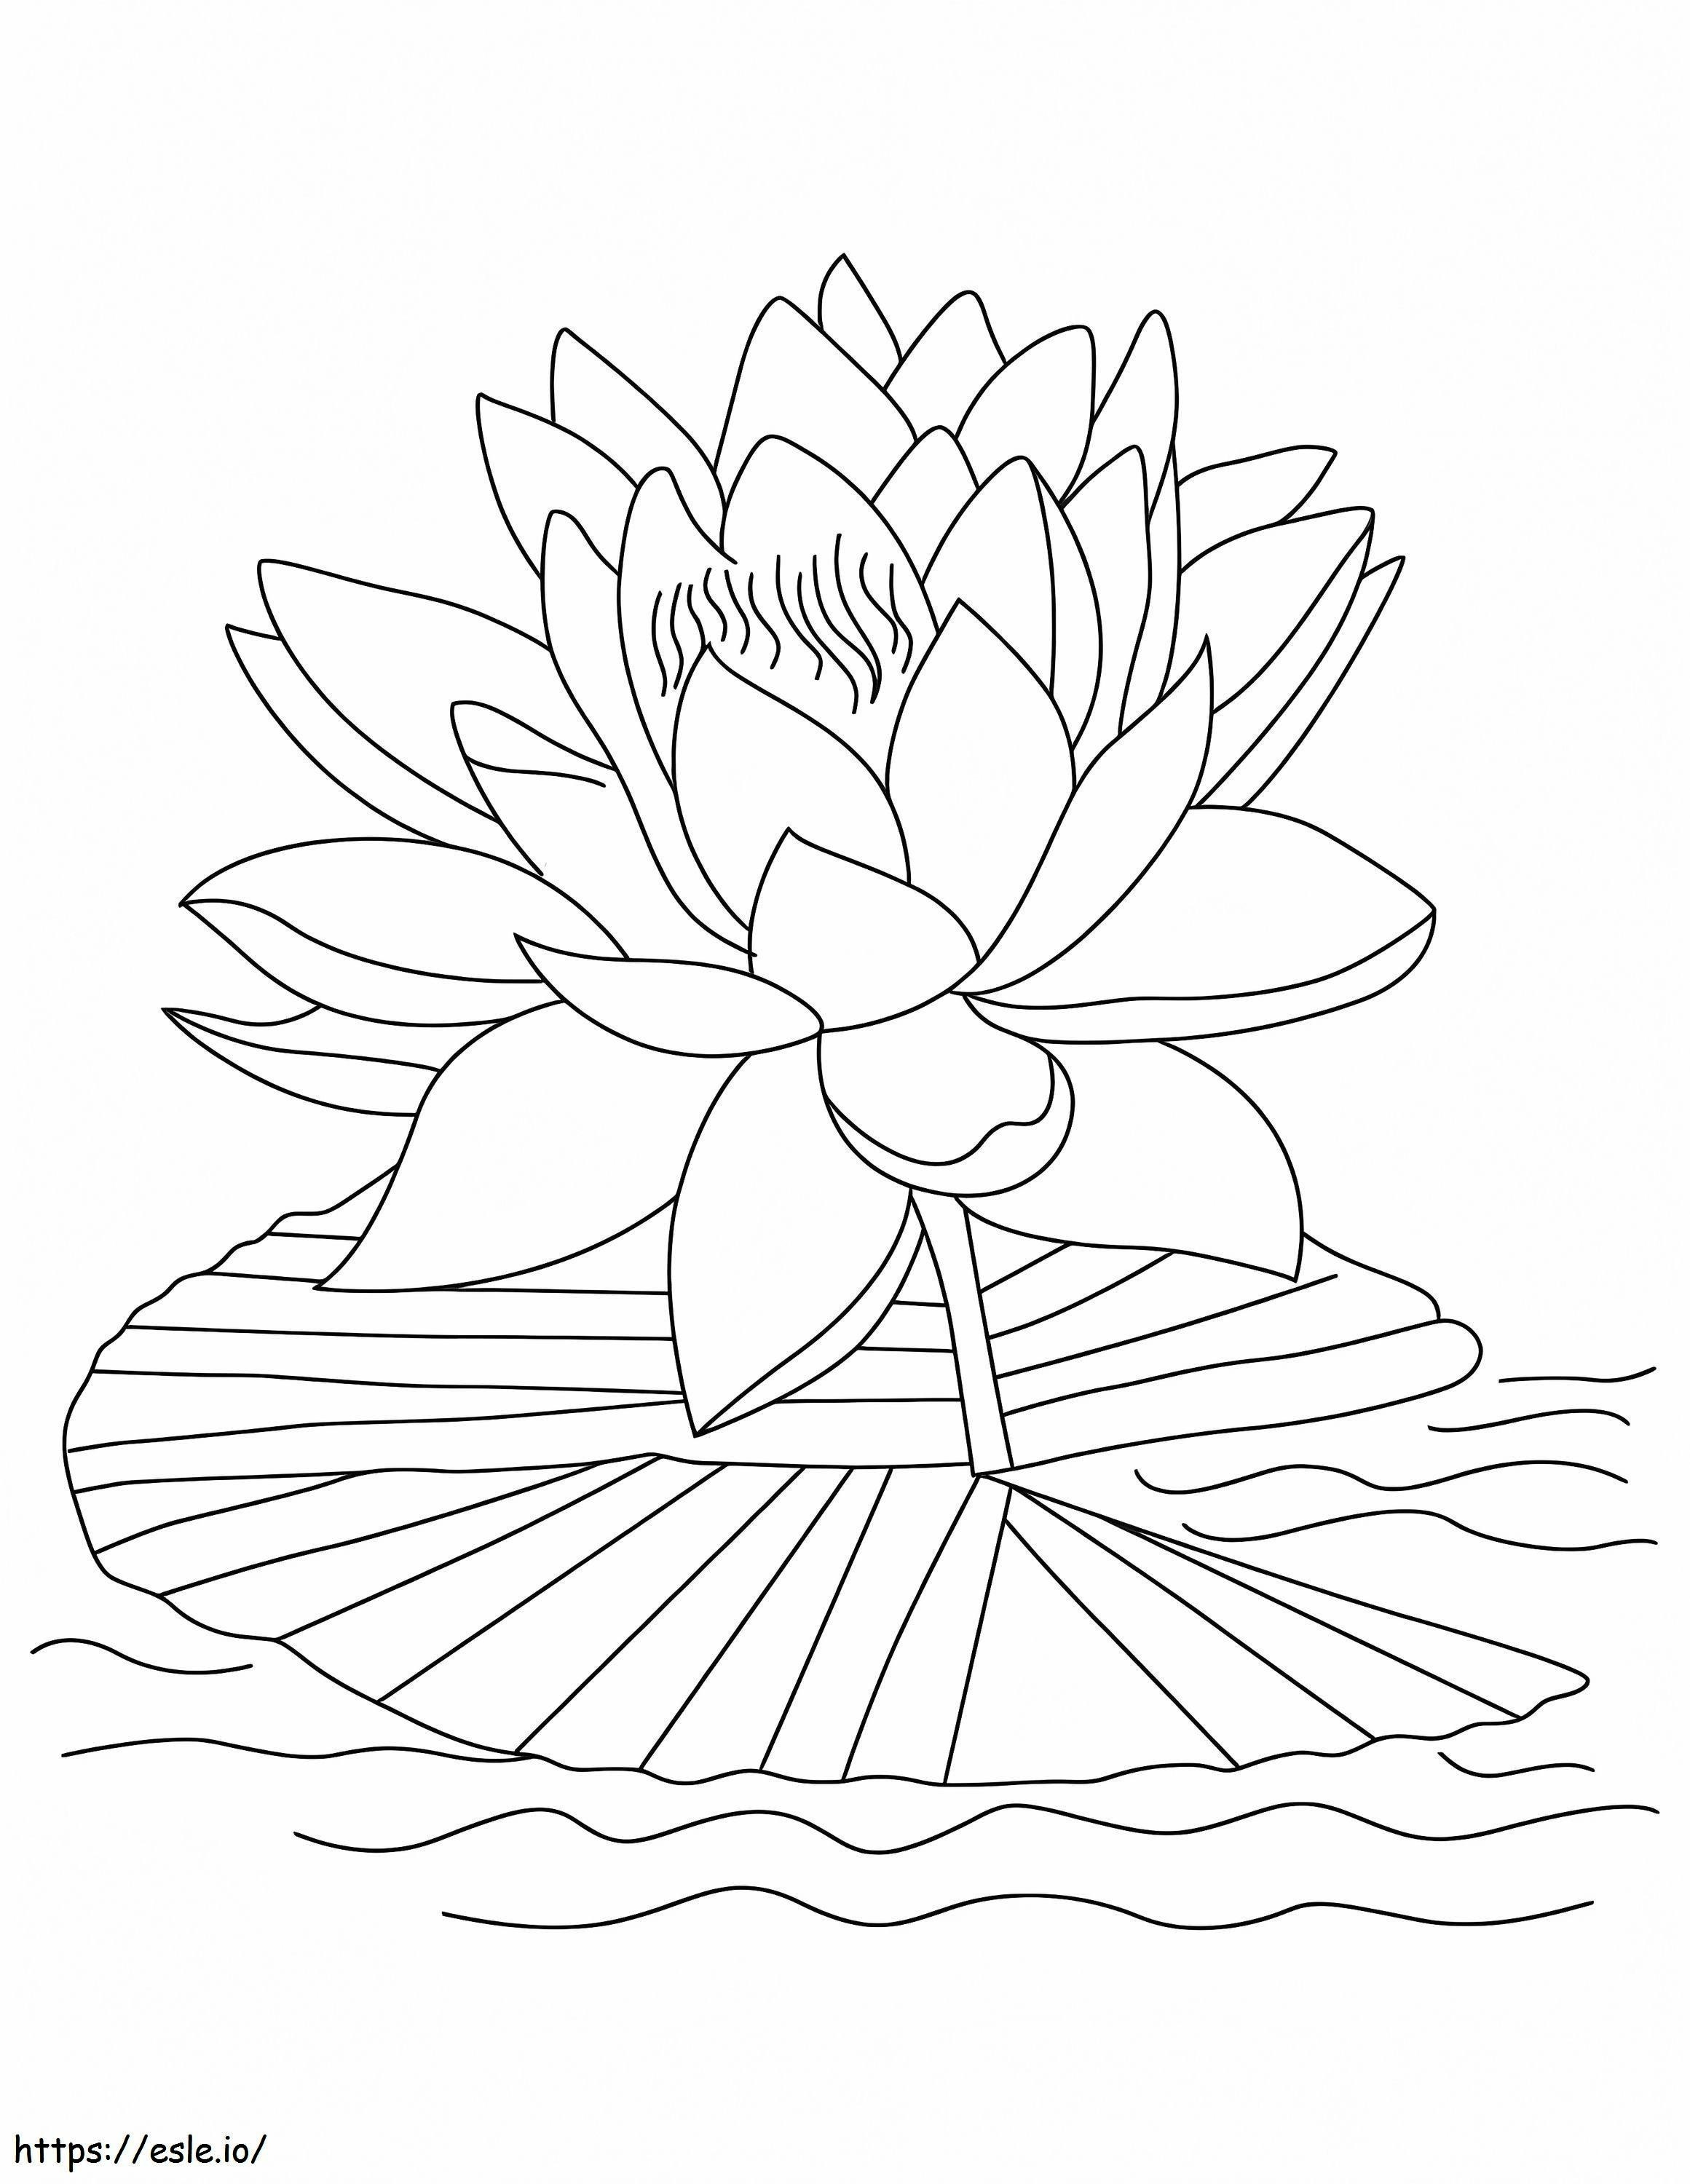 Coloriage Lotus Simple à imprimer dessin